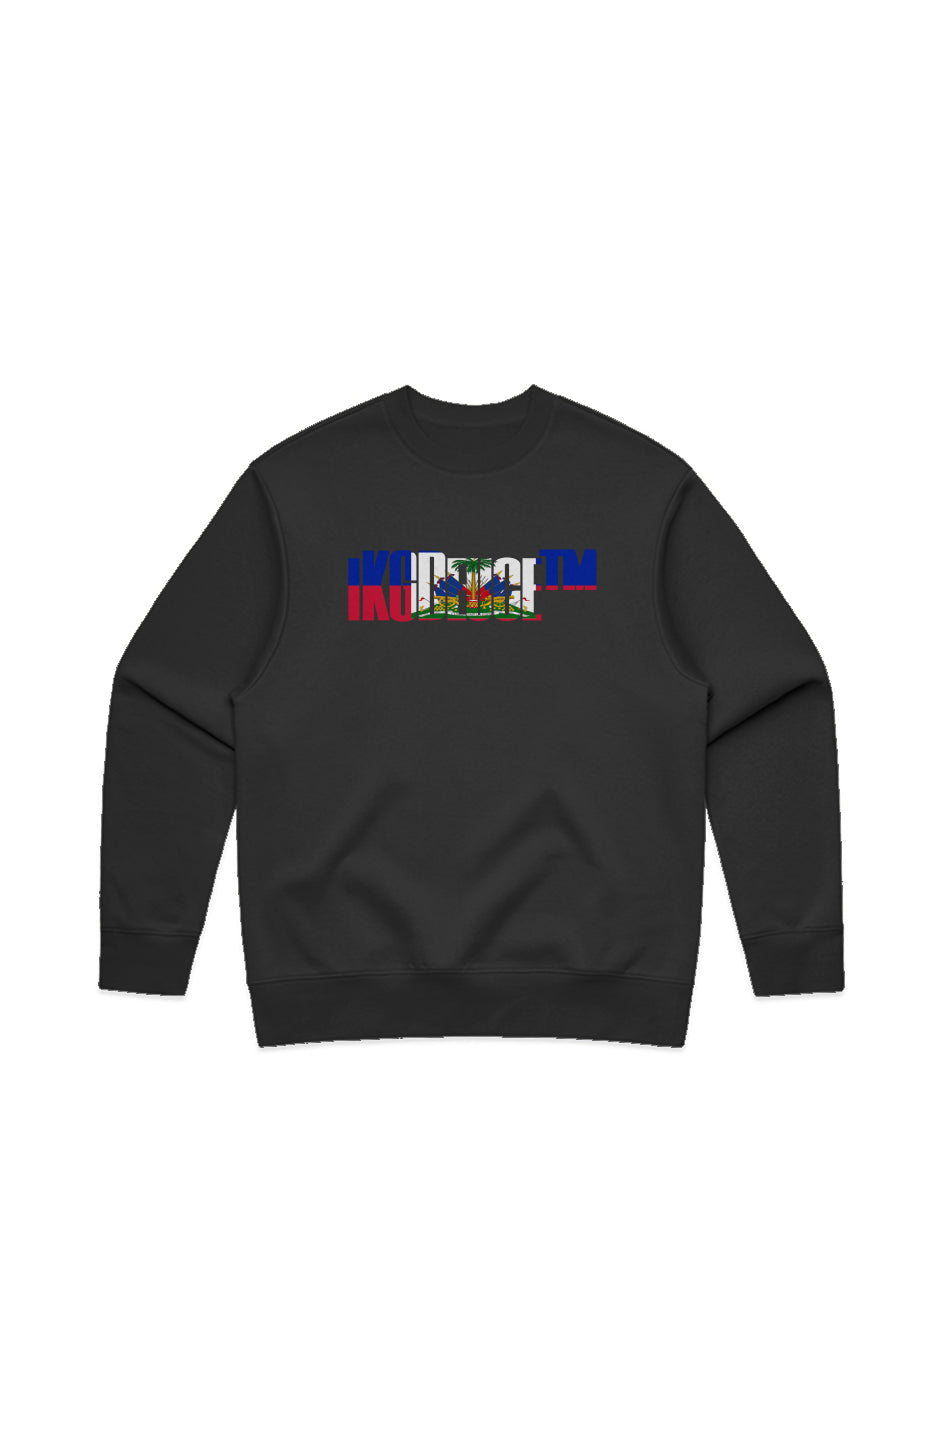 Haiti (Crewneck Sweatshirt) Black